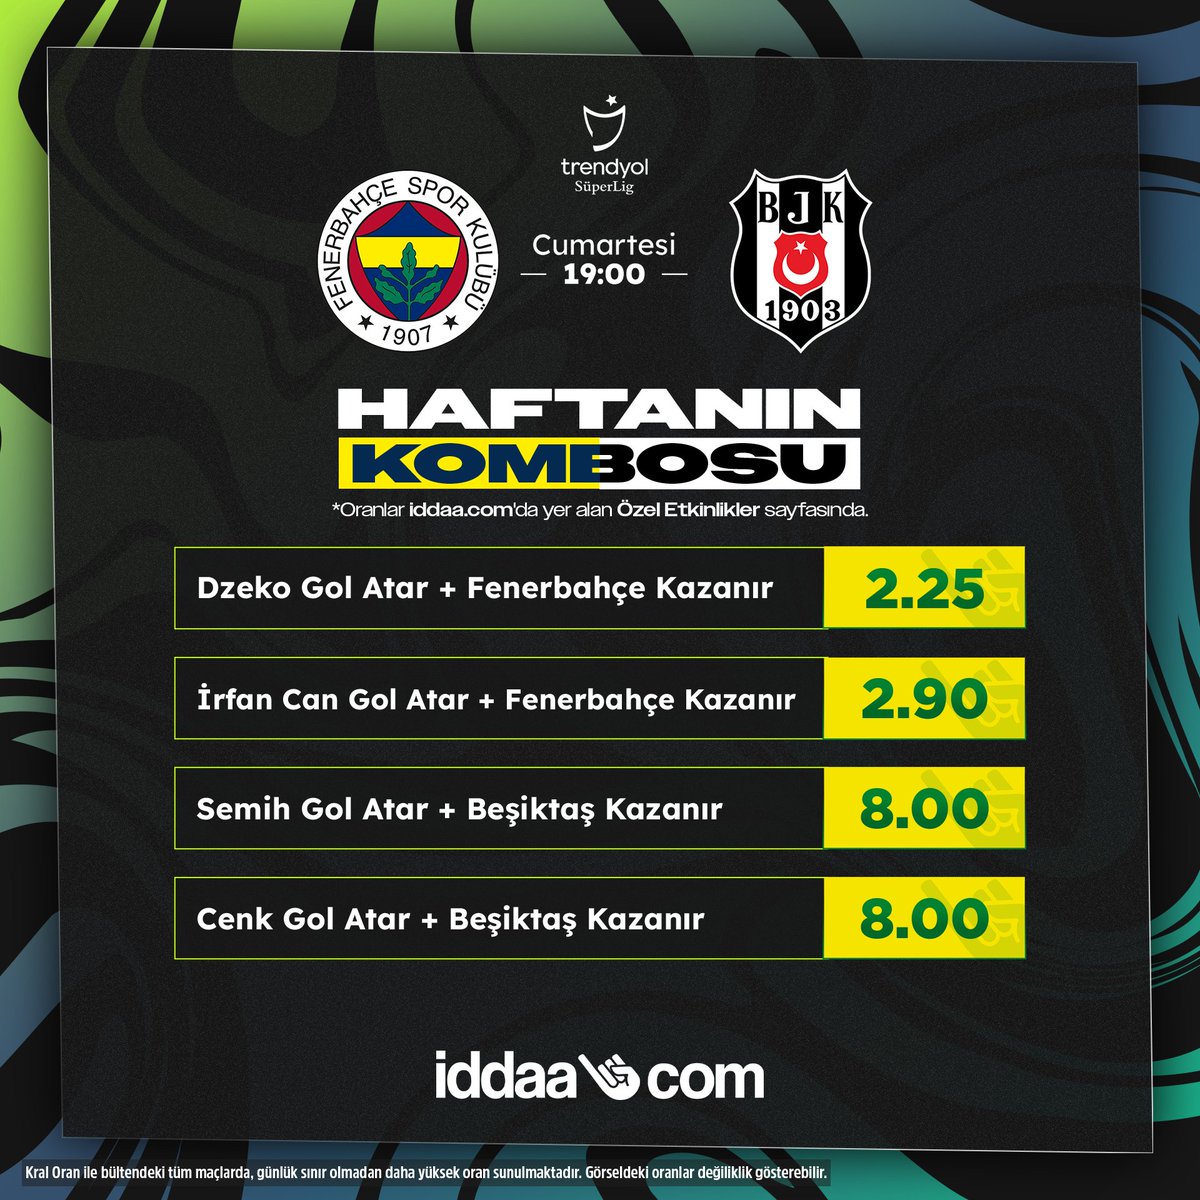 🚨Fenerbahçe - Beşiktaş derbisinde Haftanın Kombosu'nu kaçırma! 📲Haftanın Kombosu iddaa.com'da yer alan Özel Etkinlikler sayfasında. #FBvBJK